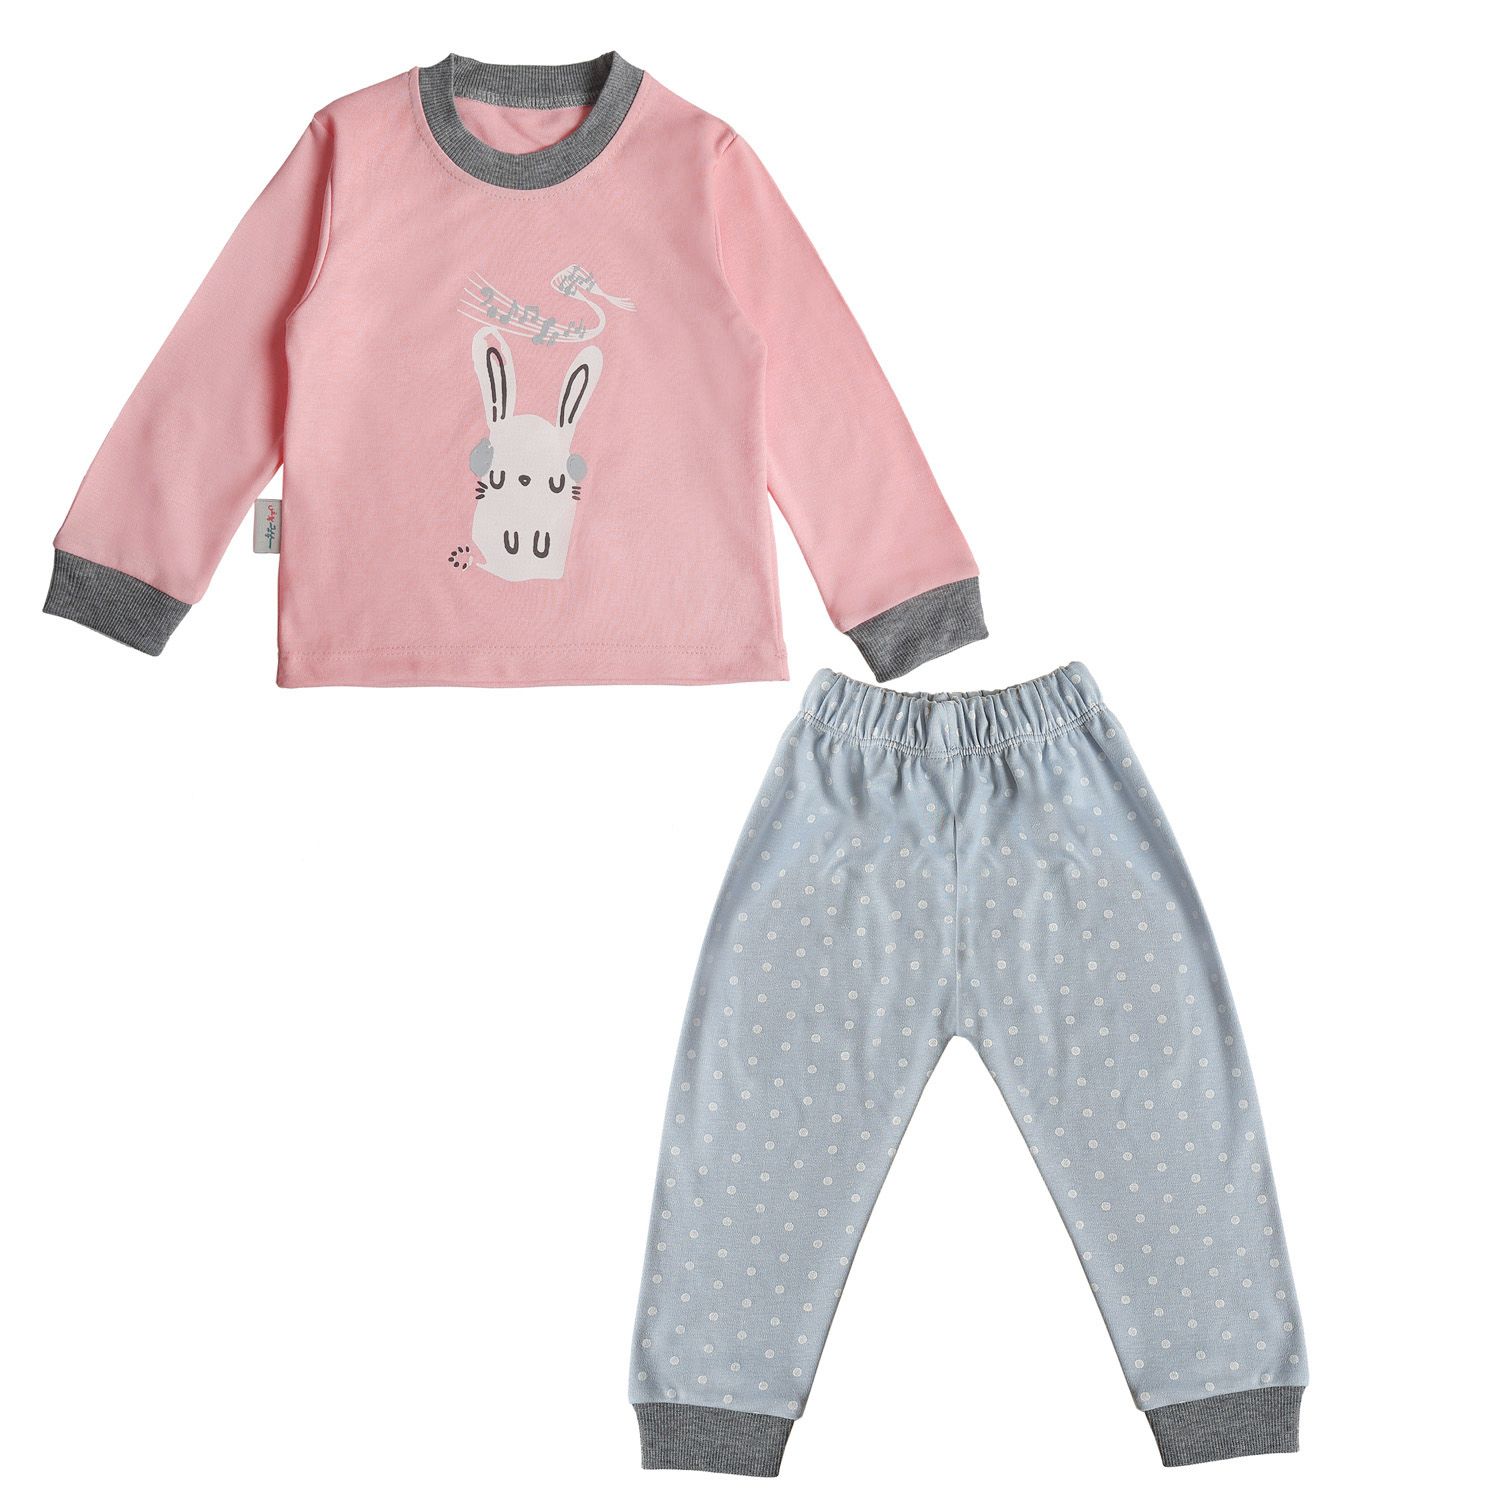 ست تی شرت آستین بلند و شلوار بچگانه سپیدپوش مدل خرگوش و موزیک -  - 1